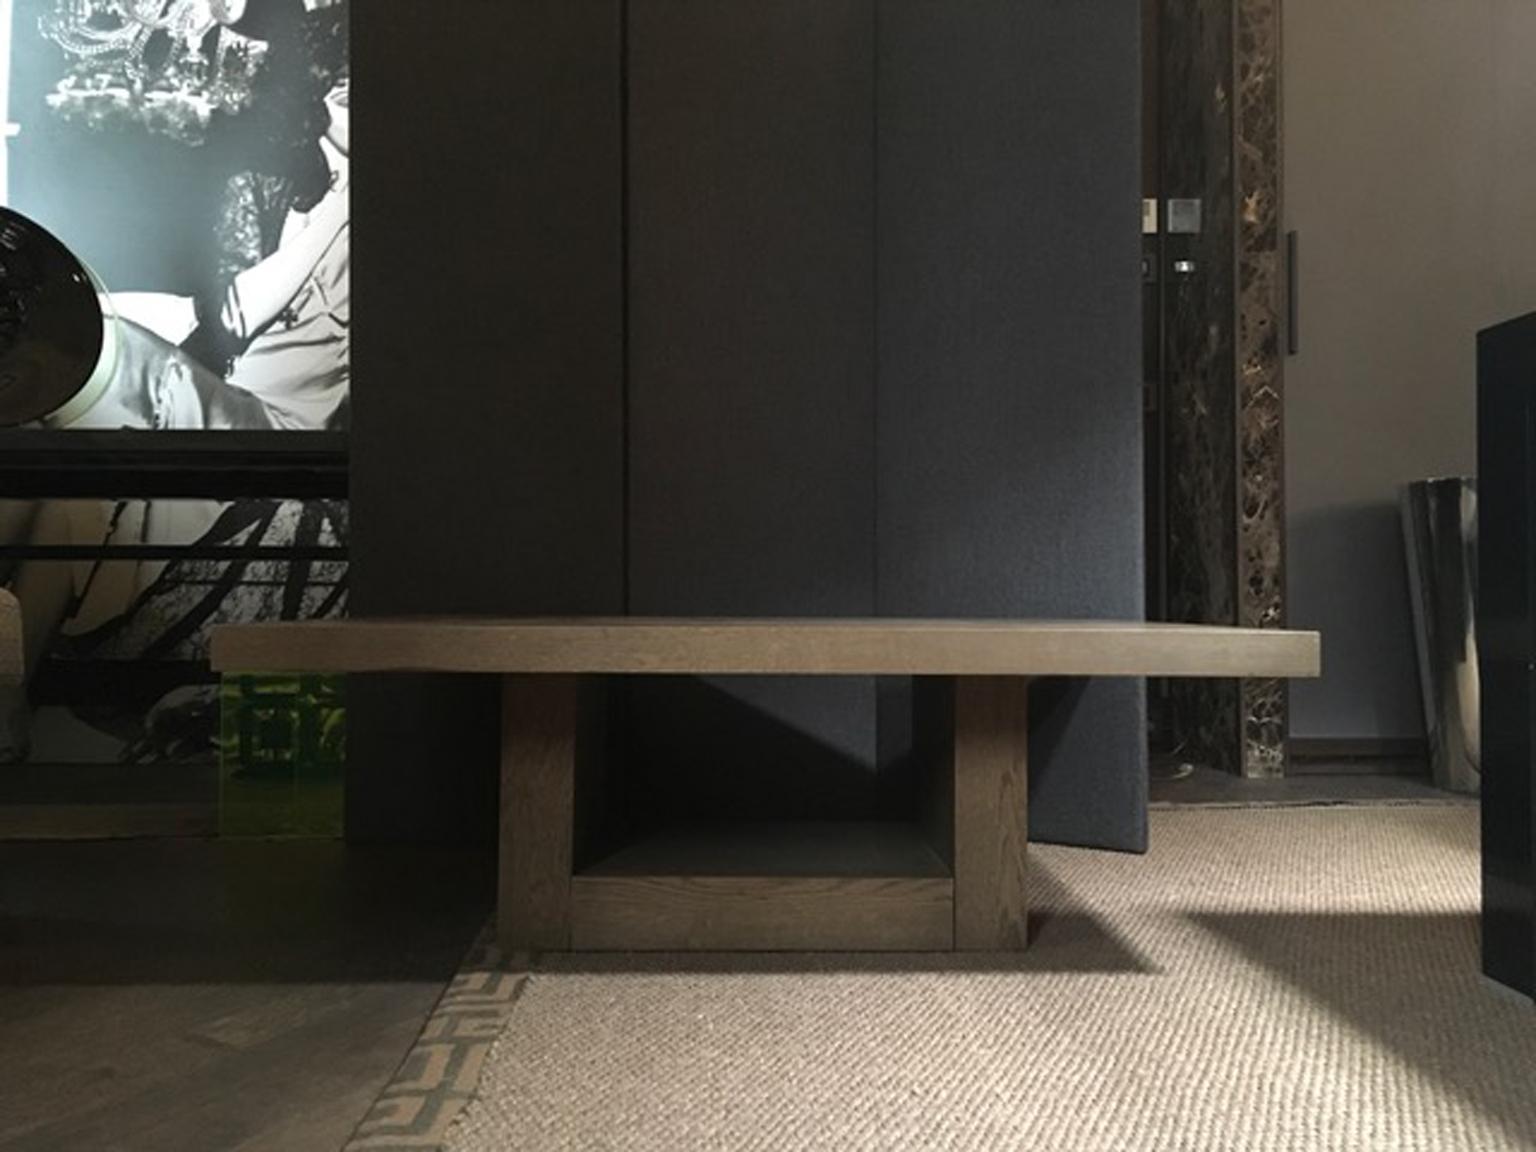 Italie 21ème siècle, table basse rectangulaire en bois de chêne de style moderne.

La beauté de cette table basse en bois de chêne réside dans son style et sa couleur modernes. 
Nous pouvons  appréciez l'élégance du plateau en chêne massif.
La table